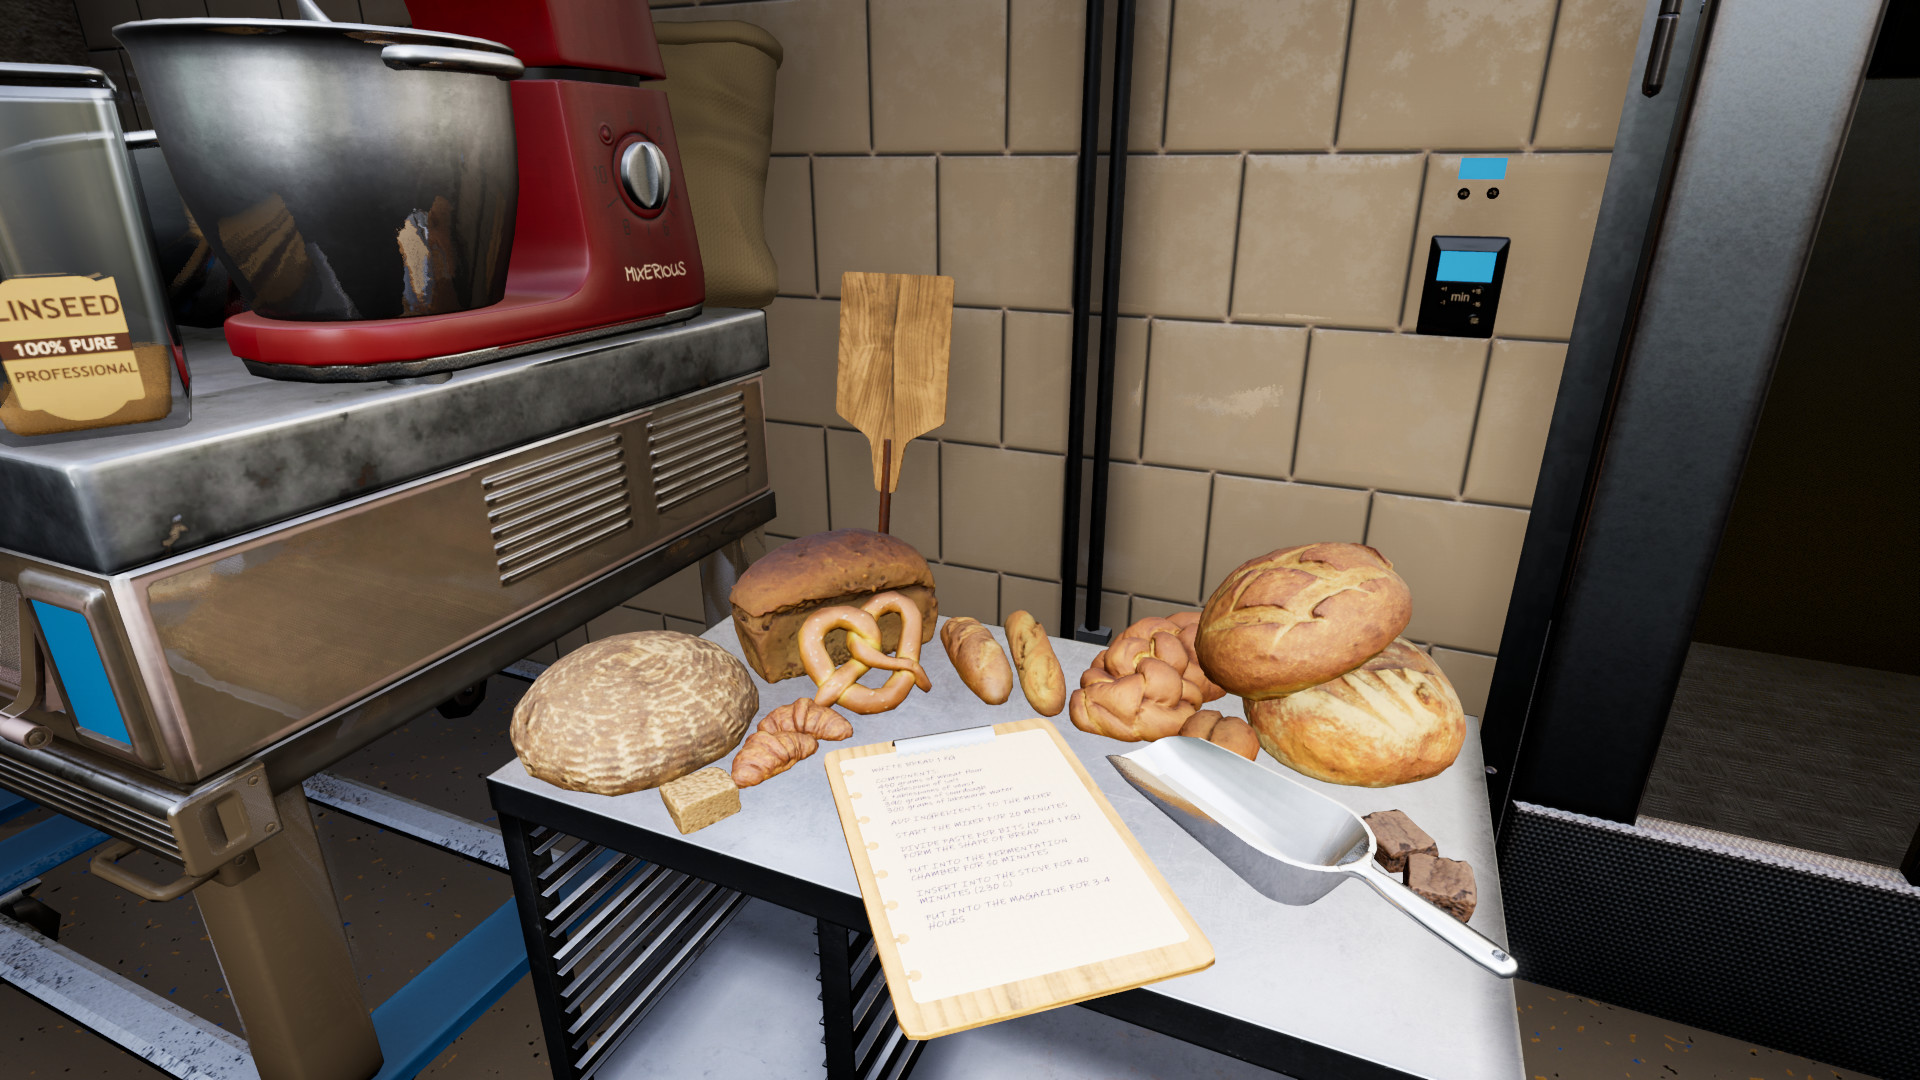 面包房模拟器